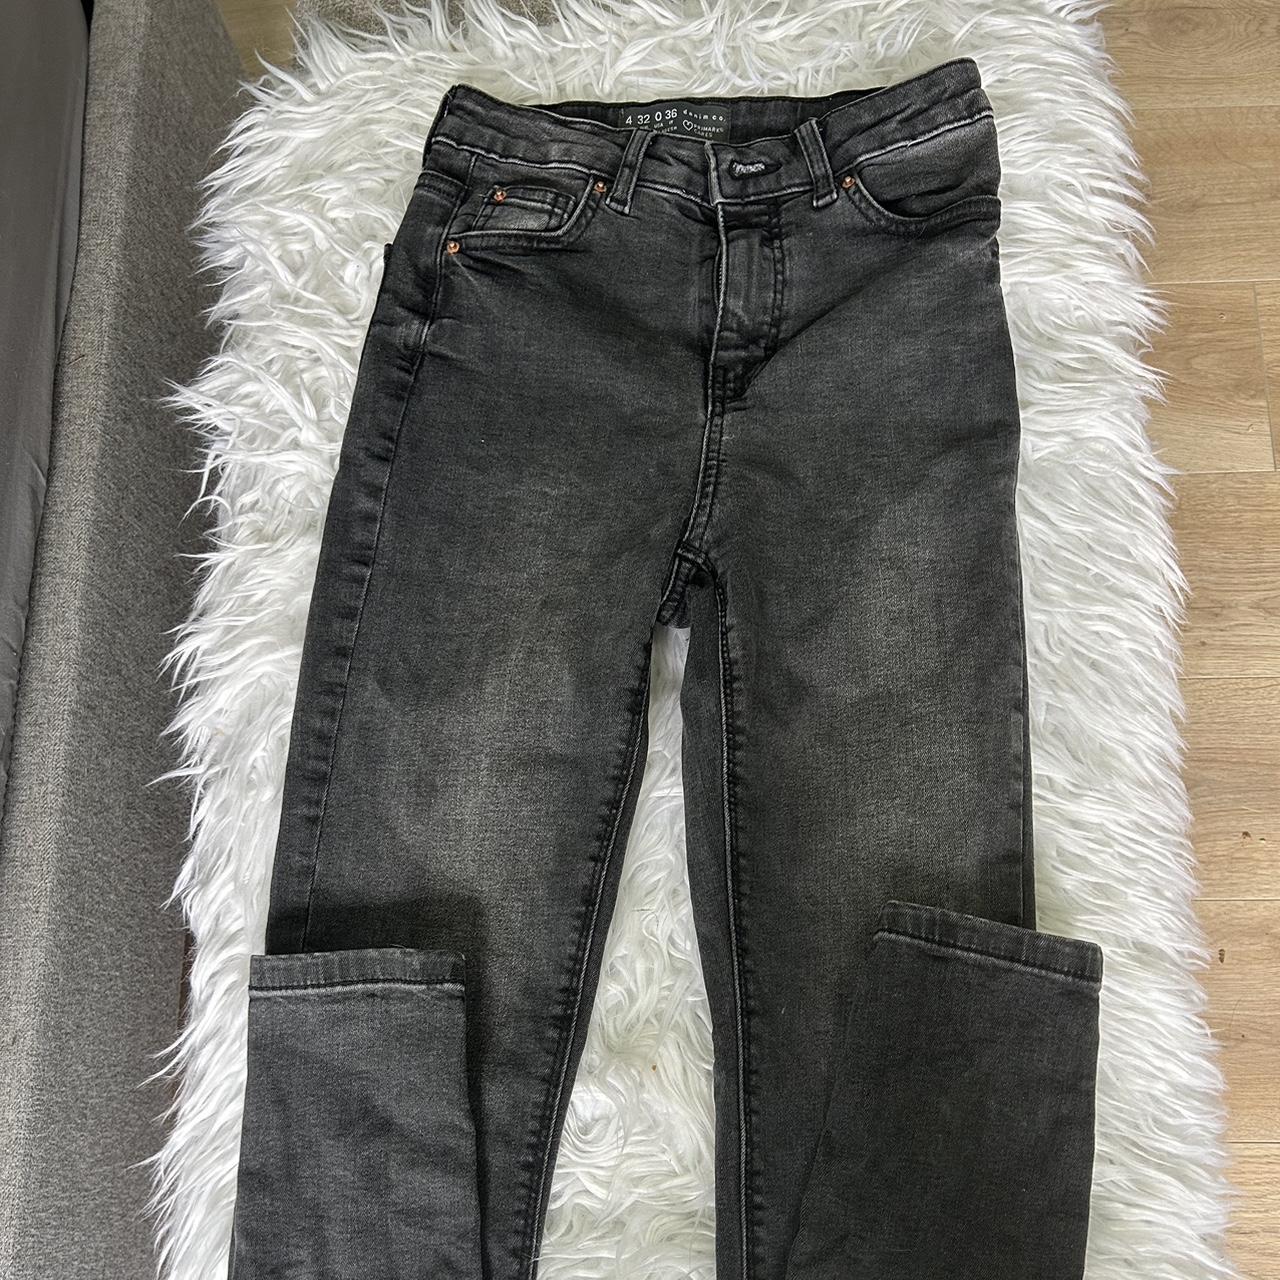 Black primark skinny jeans, size 4 - Depop